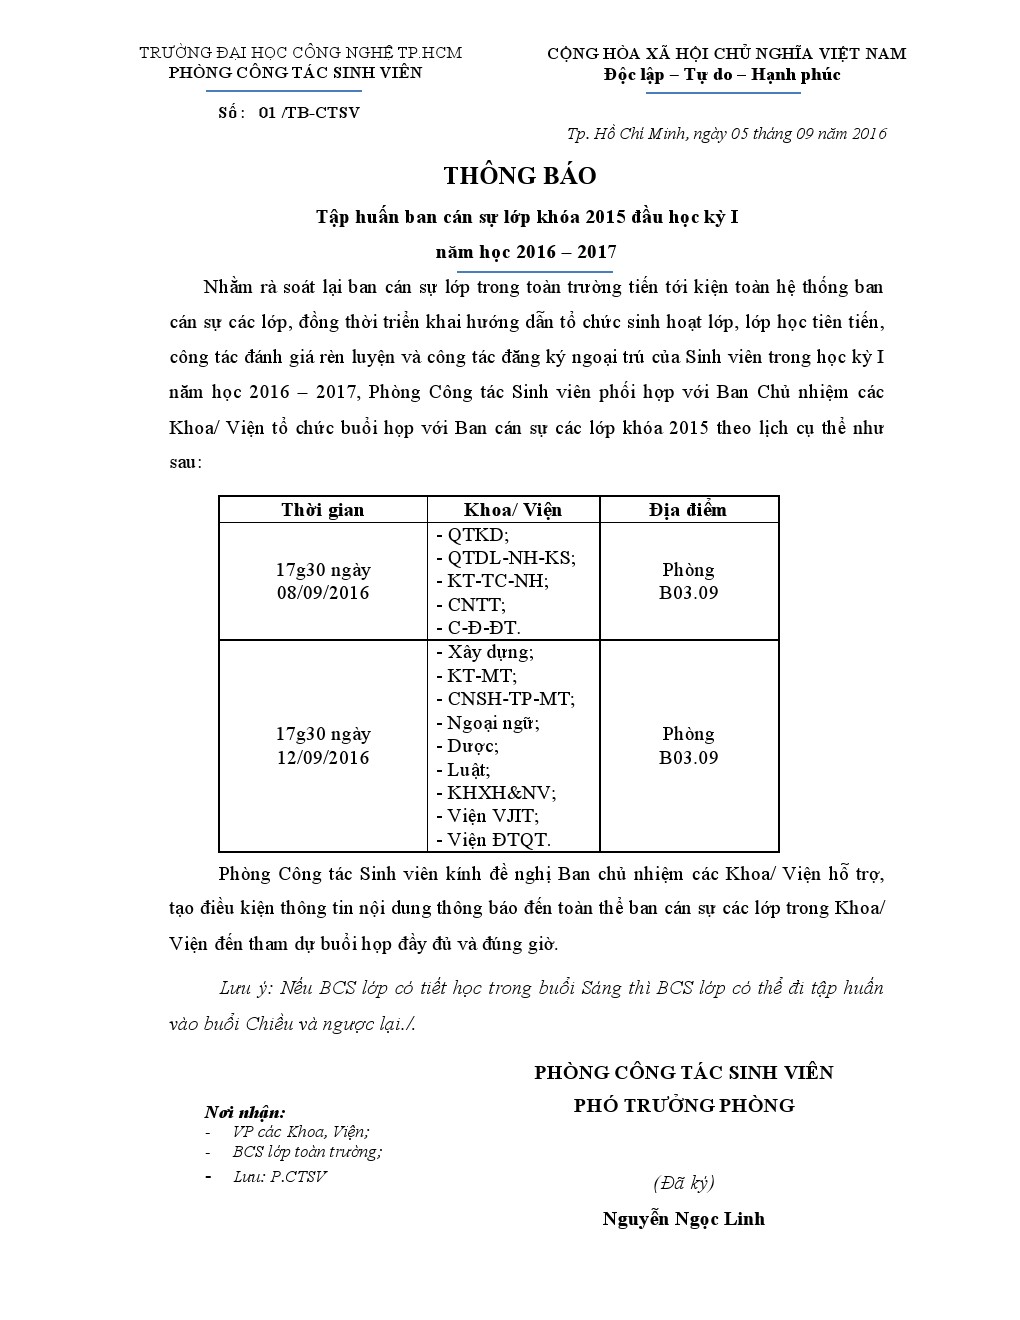 Thông báo về việc tập huấn Ban cán sự lớp khóa 2015 HK1_NH 2016 - 2017 2